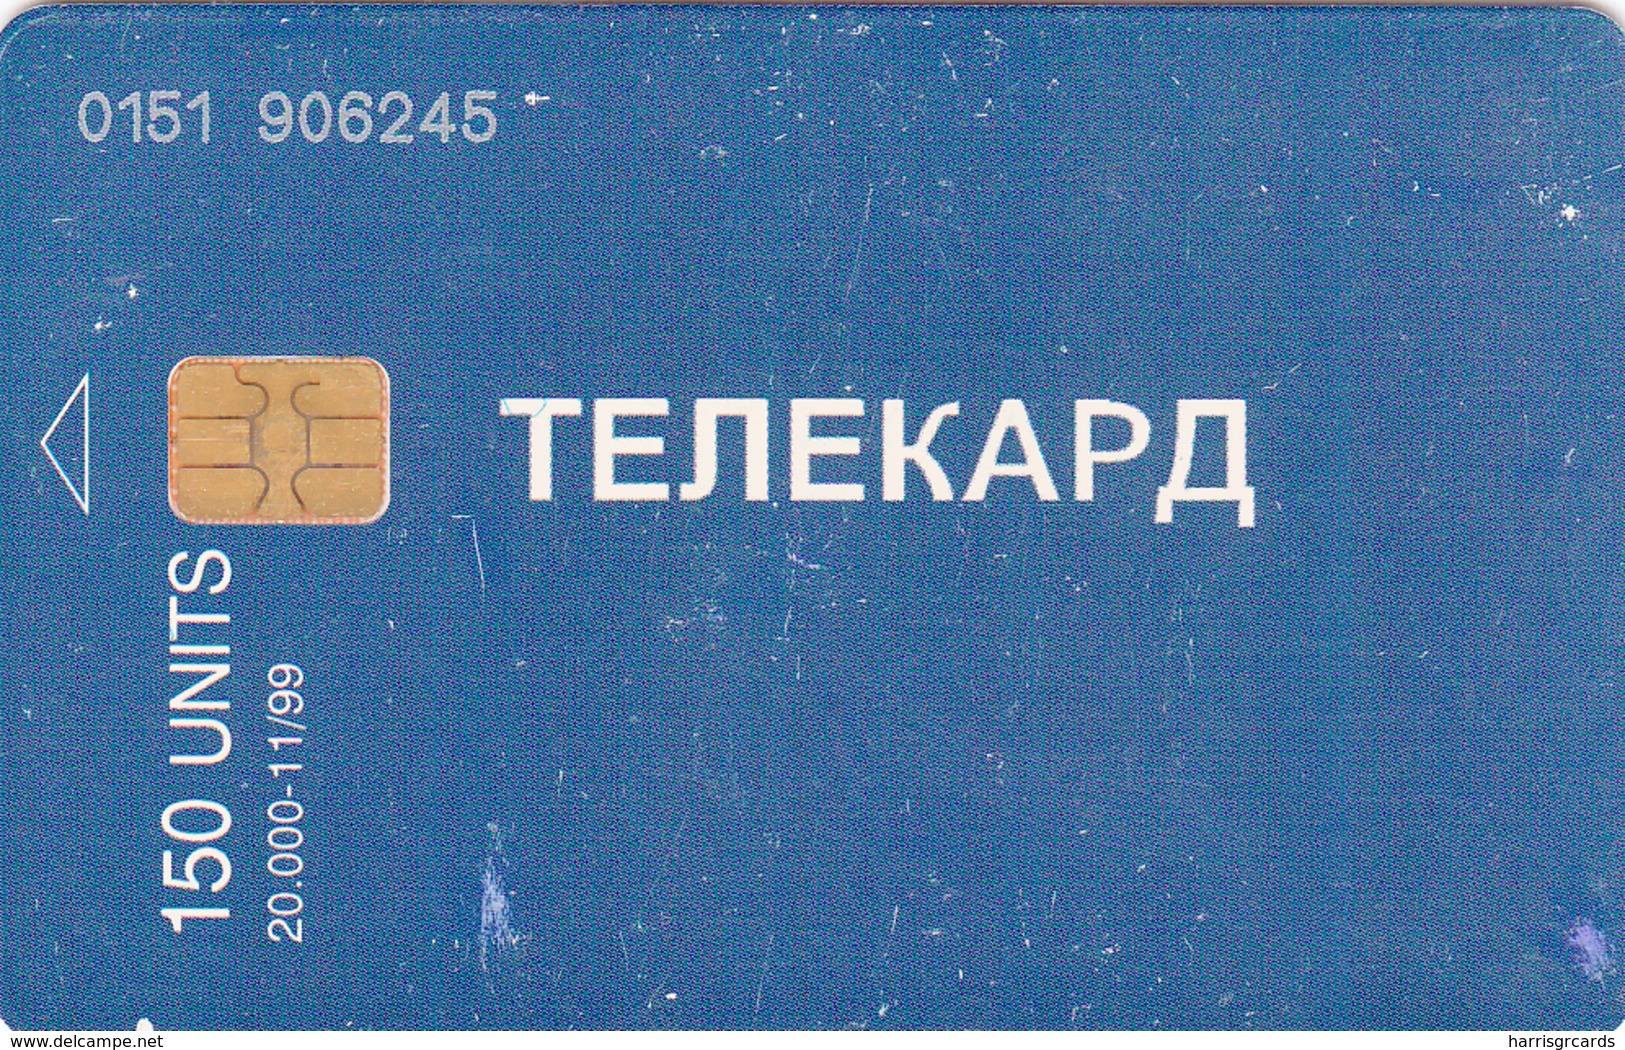 BOSNIA - Republica Srpska Telecard, Blue Card, 11/99, 150 U, Tirage 20,000, Used As Scan - Bosnie